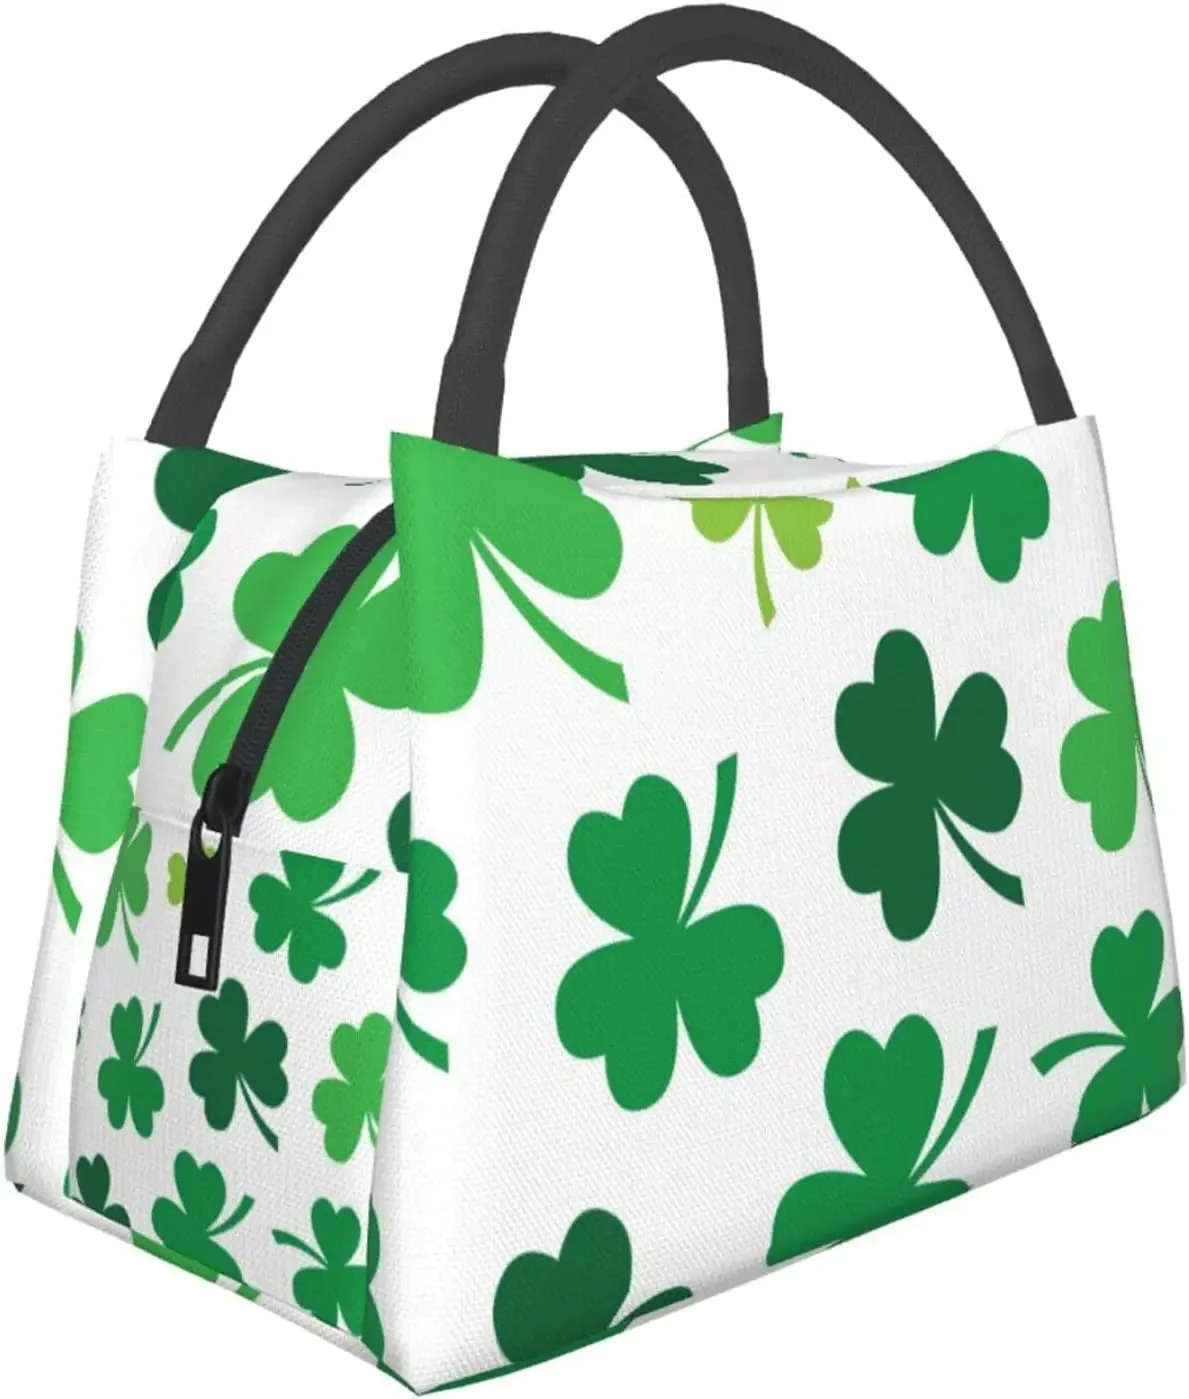 

Изолированный Ланч-бокс с четырьмя листьями St Patrick'S Day Shamrock, многоразовый большой Ланч-бокс, сумка для хранения еды, для работы, путешествий, пикника